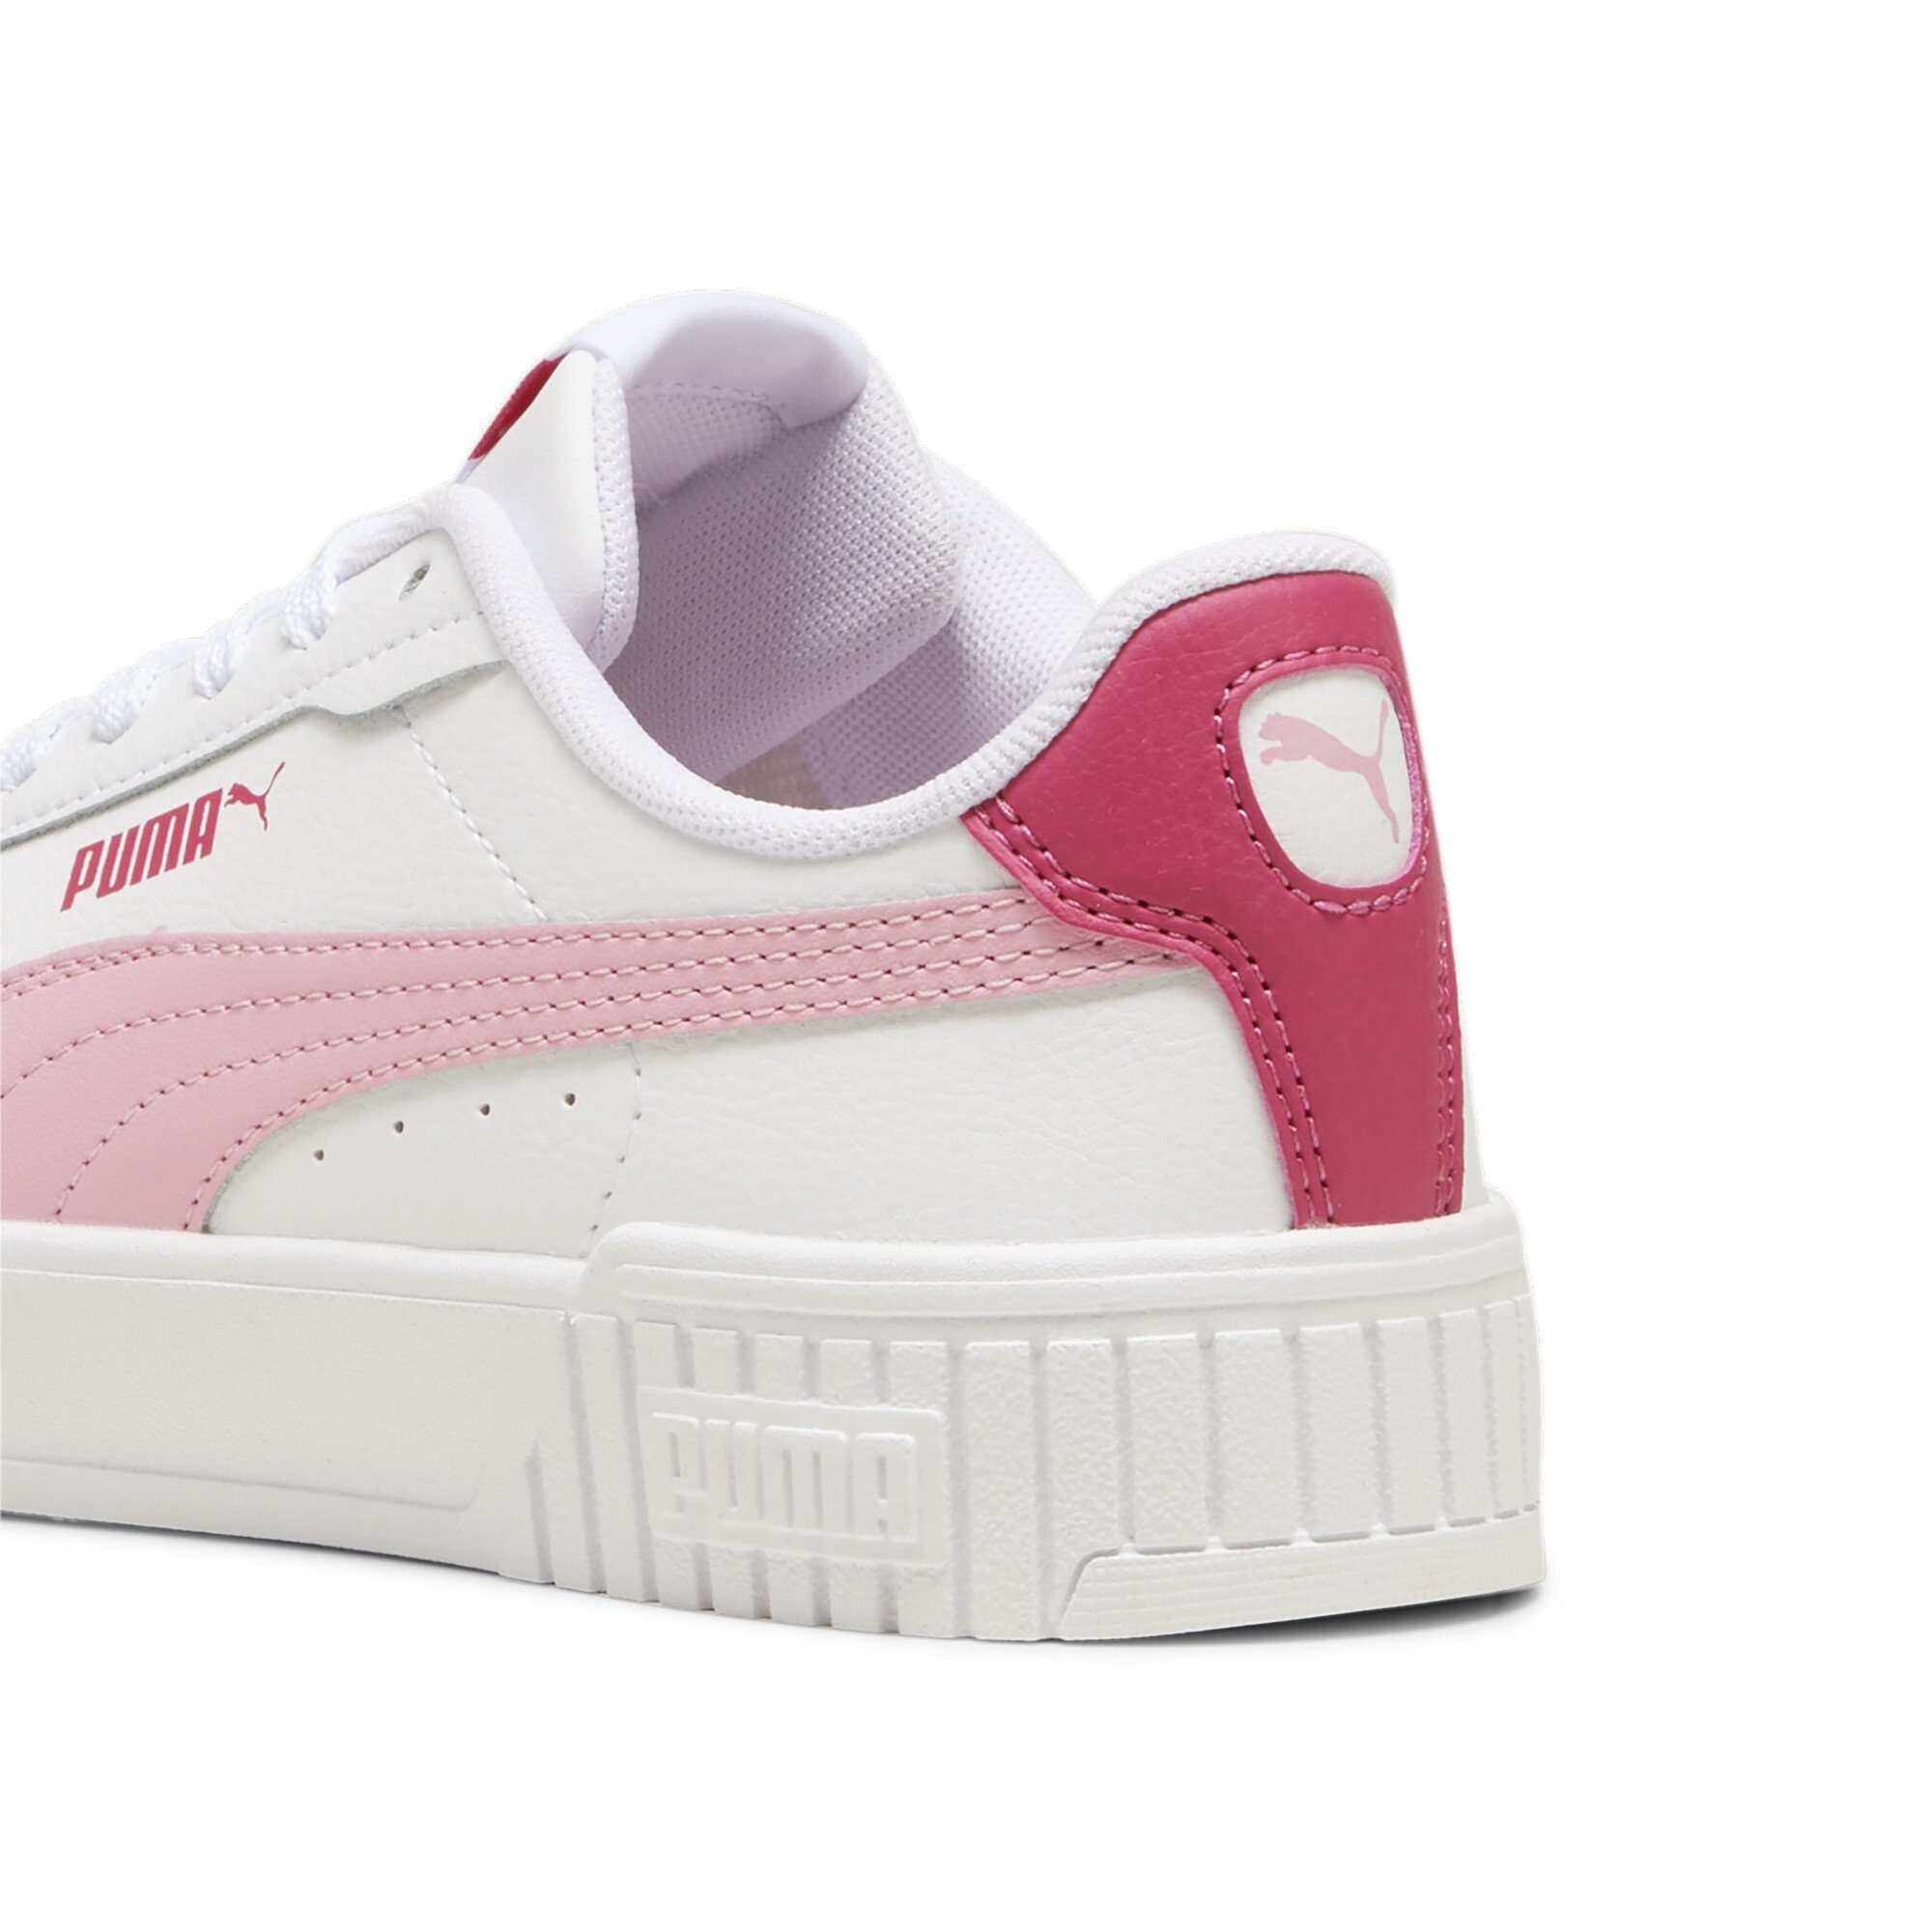 Jugendliche Carina Lilac PUMA Pink Sneaker White 2.0 Sneakers